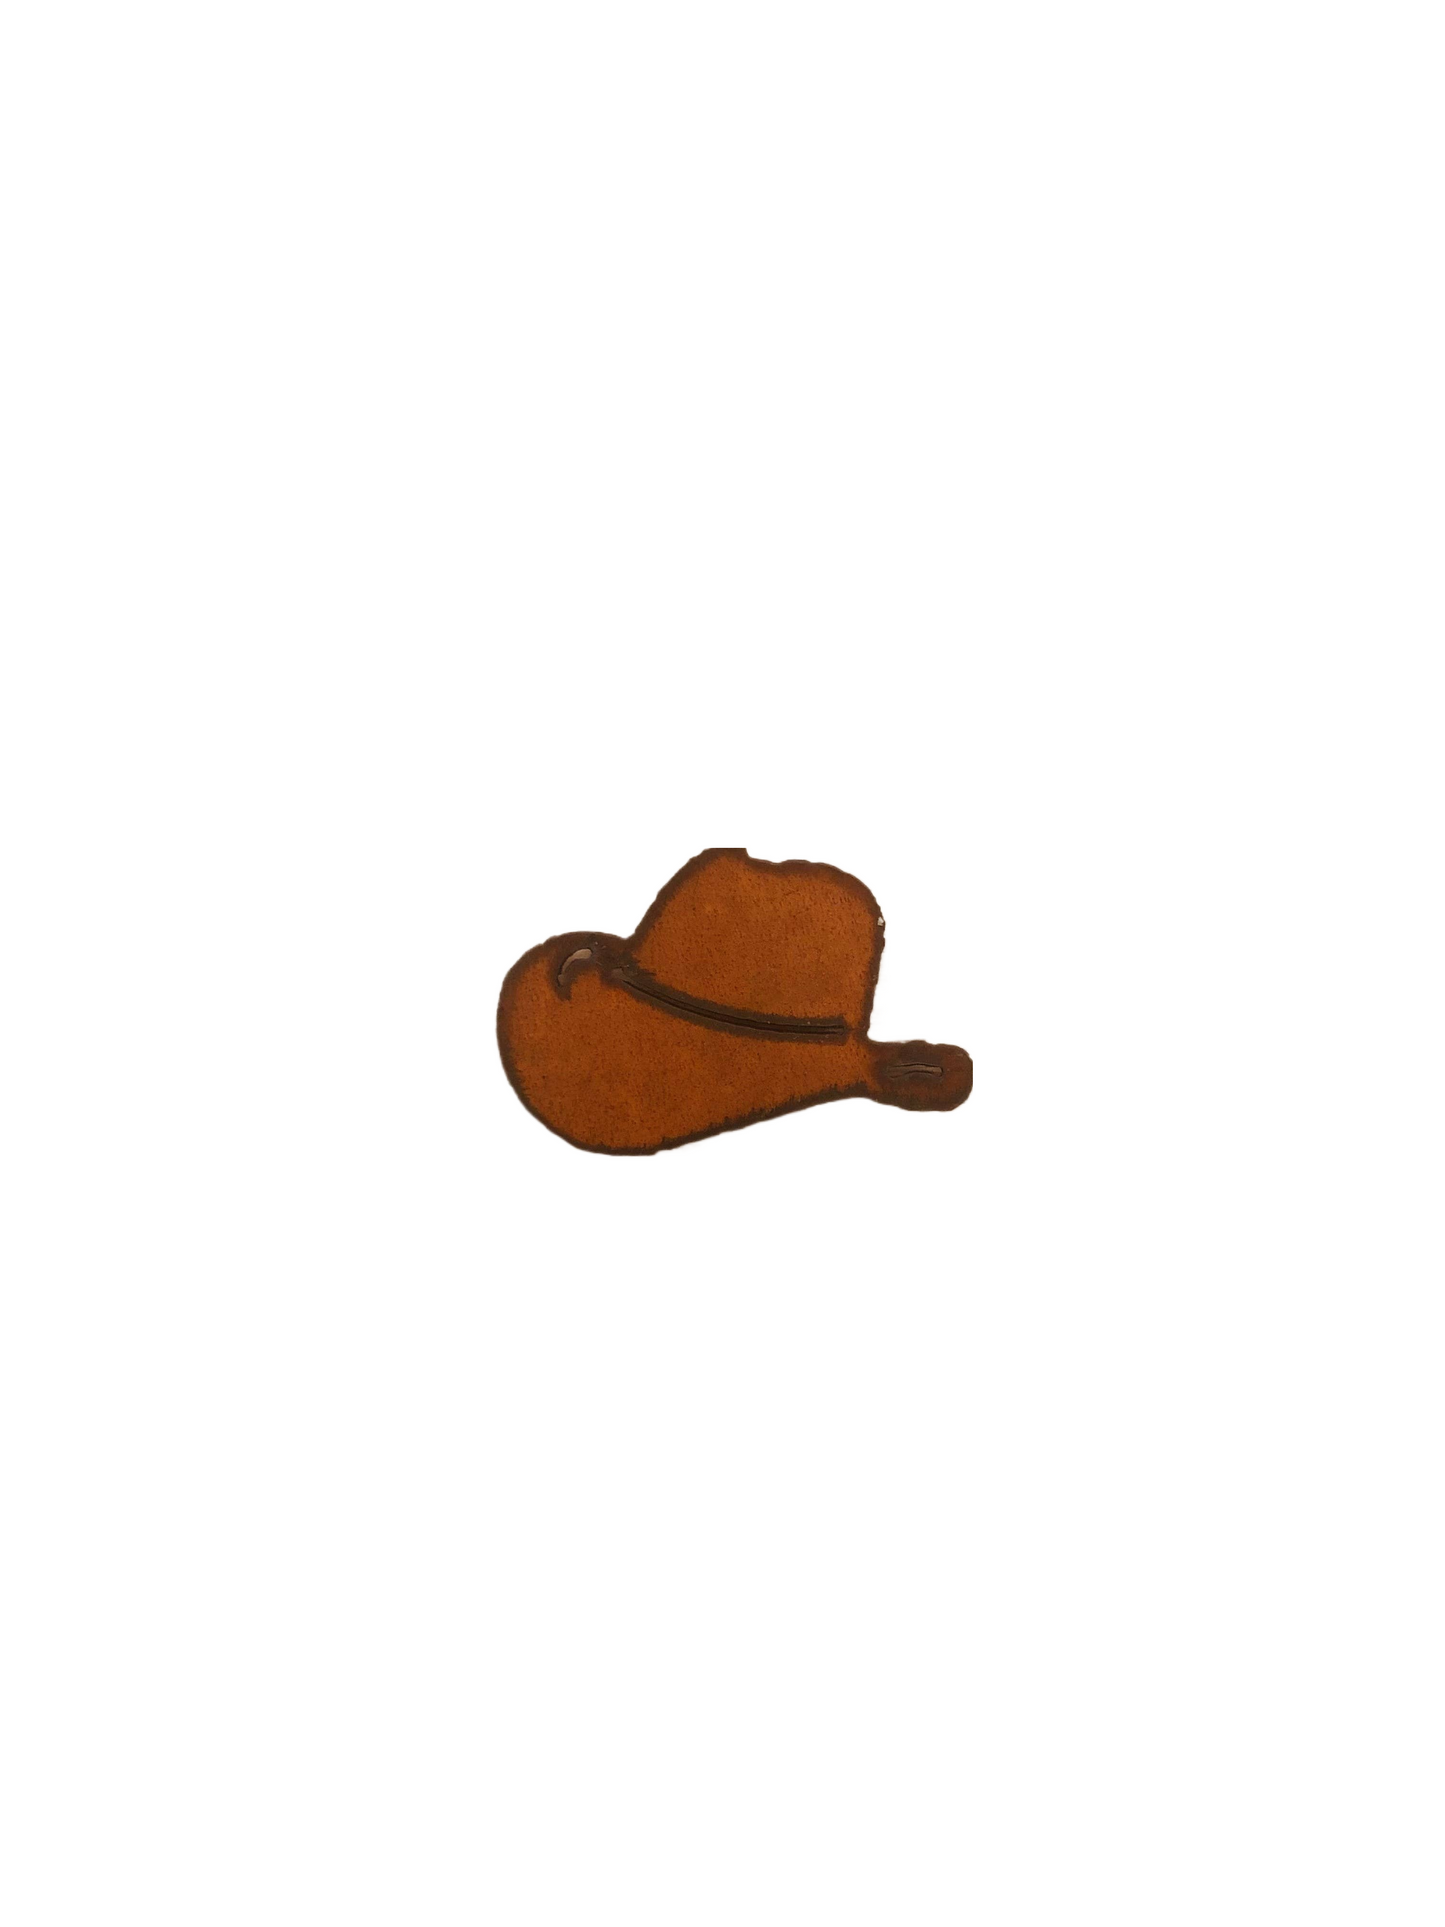 Cowboy Hat Magnet